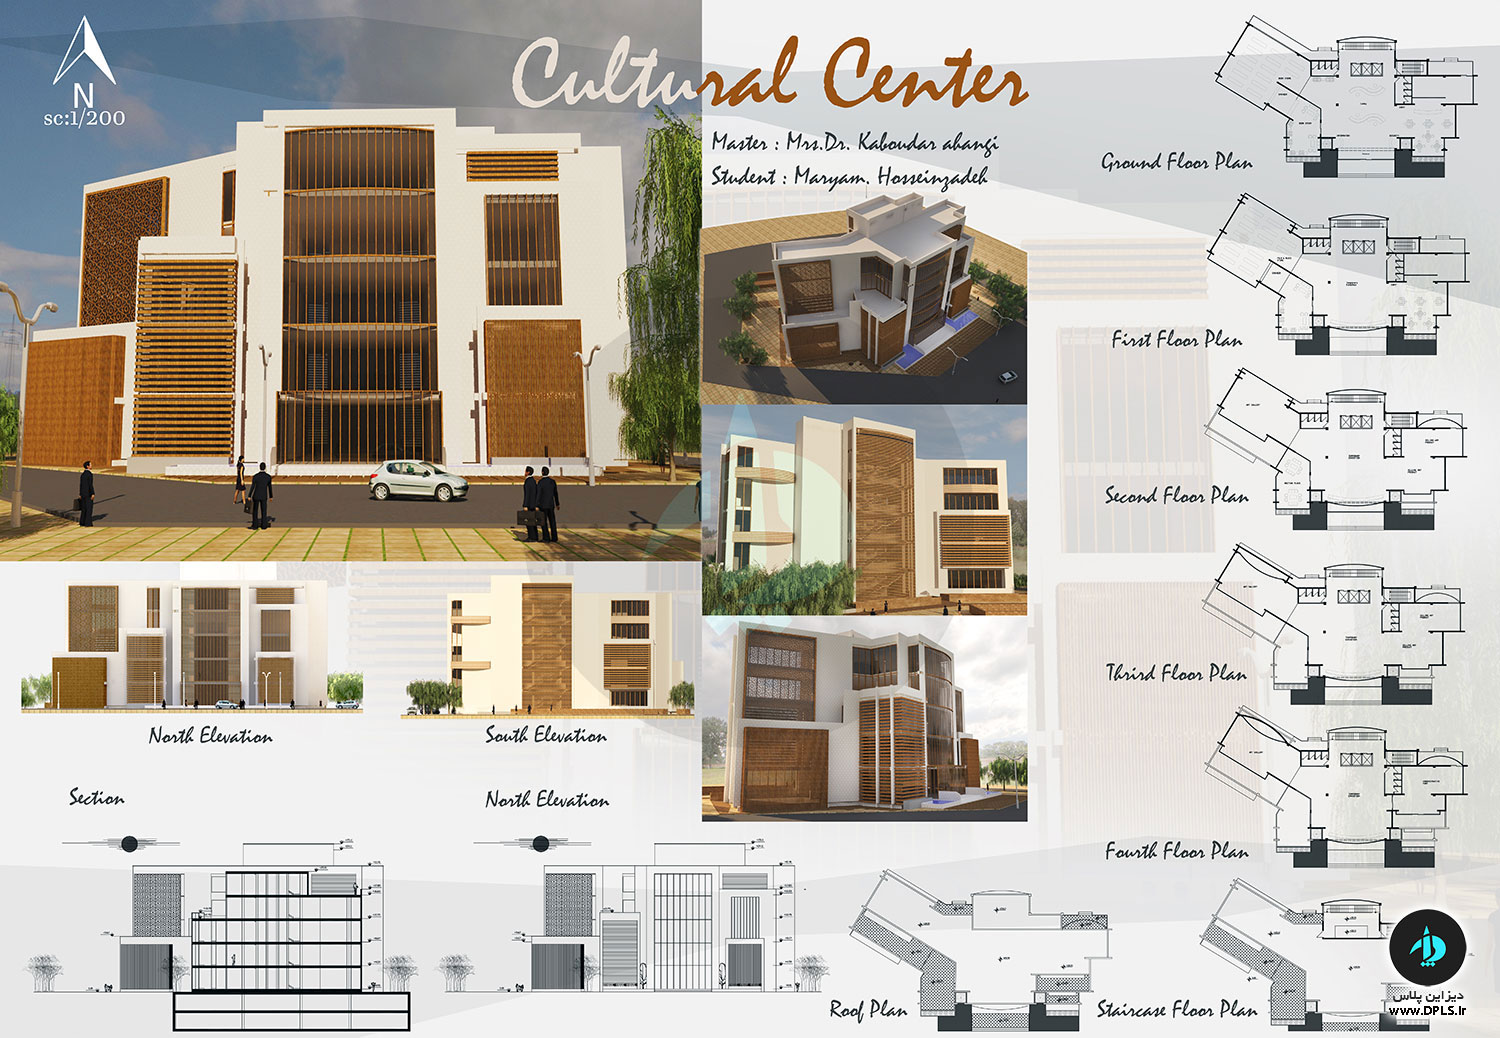 دانلود پروژه کامل مرکز فرهنگی - دانلود پروژه کامل مرکز فرهنگی - به همراه ۳D ، Cad و شیت بندی.